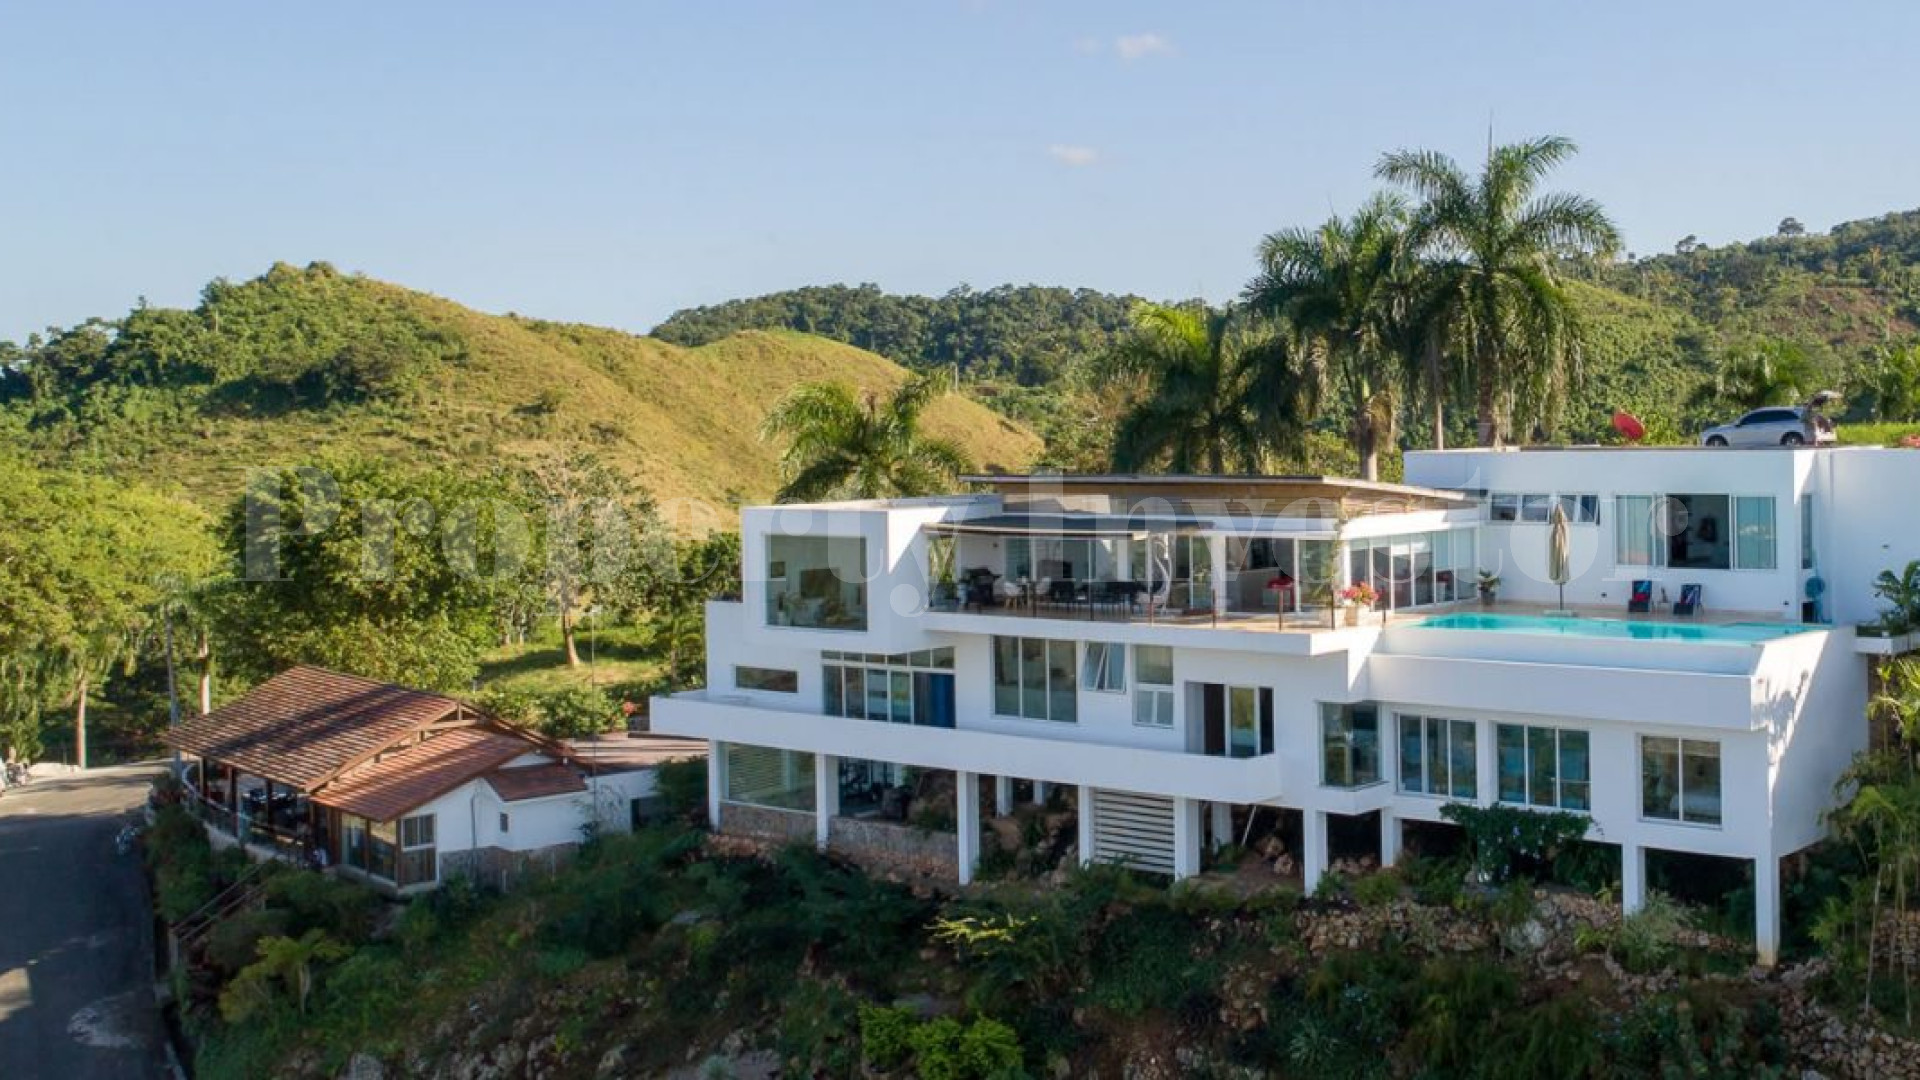 4 Bedroom Seaview Villa Overlooking Las Terrenas